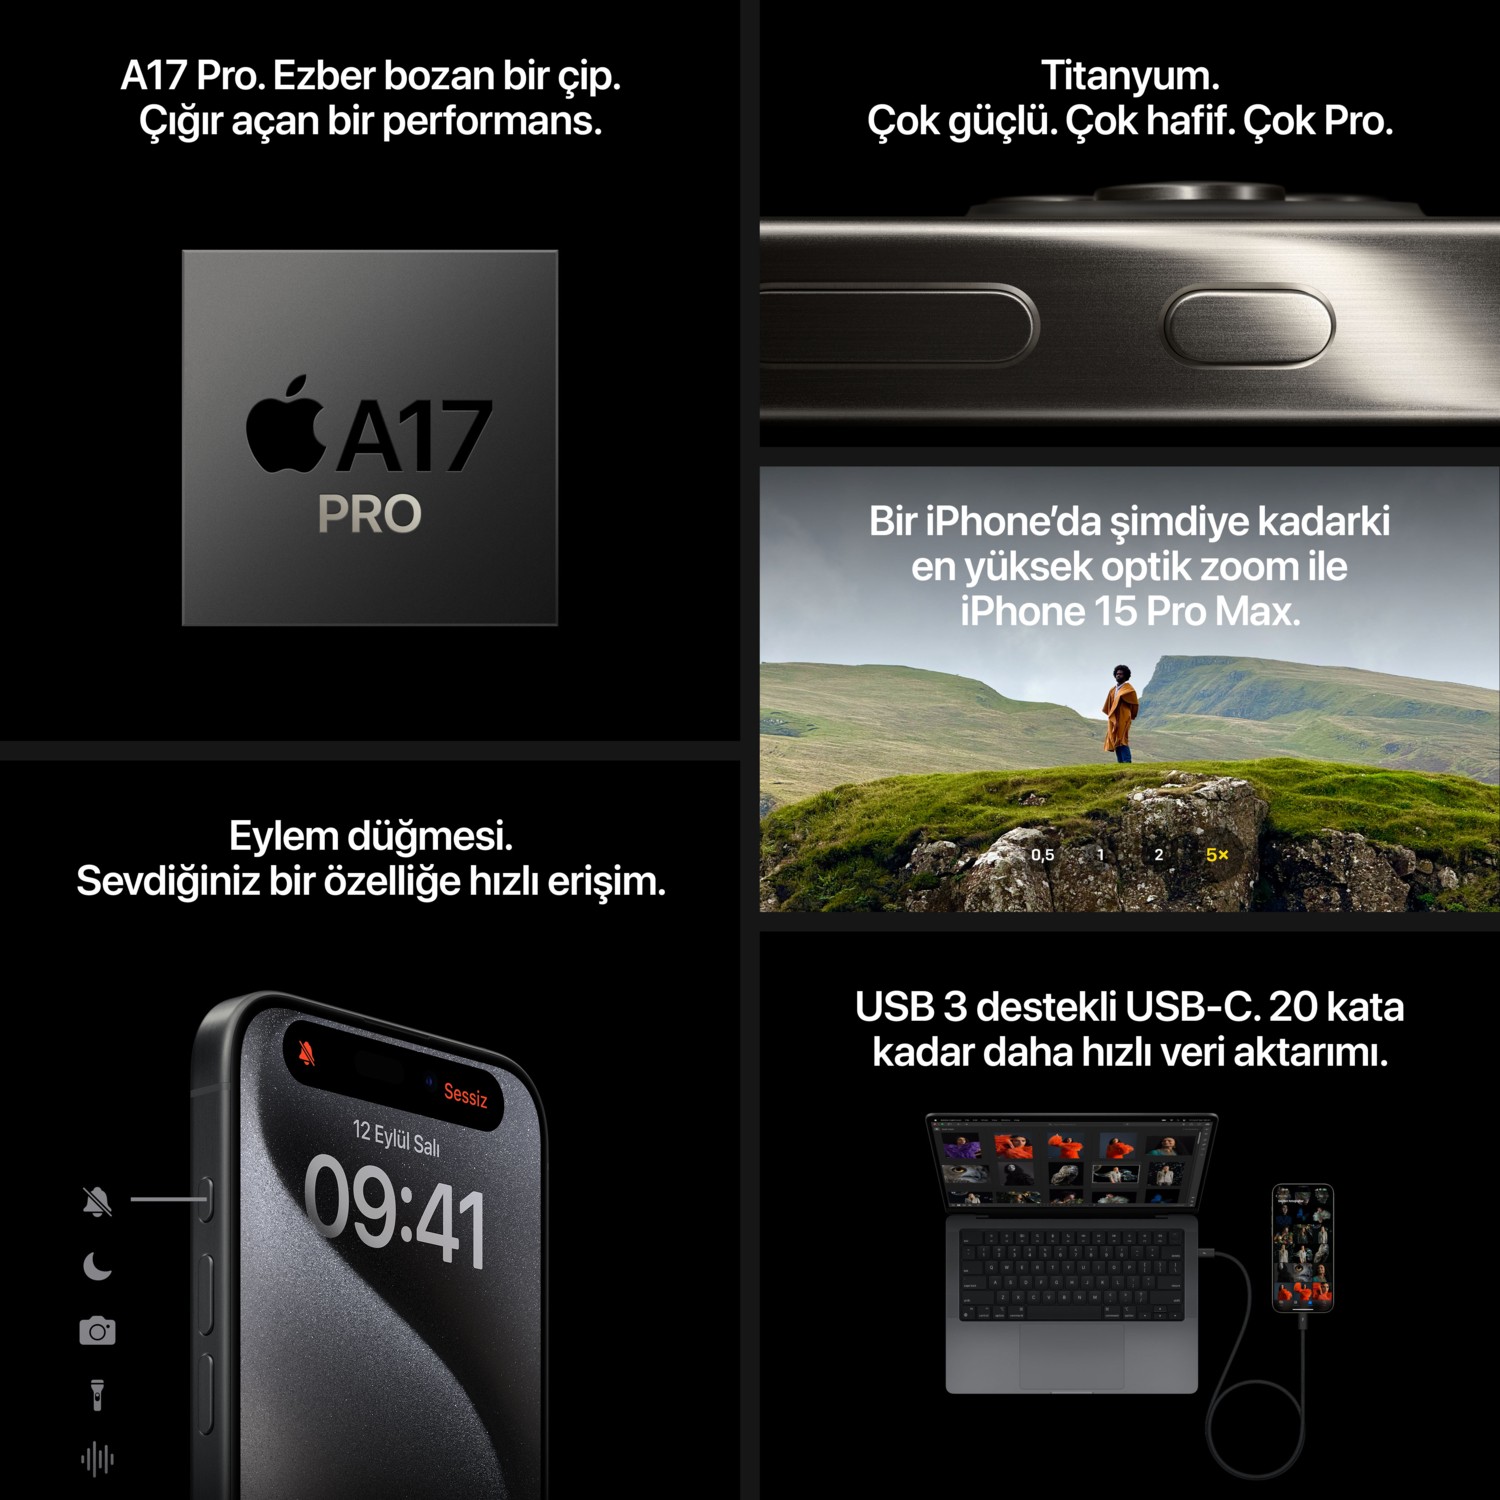 iPhone 15 Pro 1 Tb